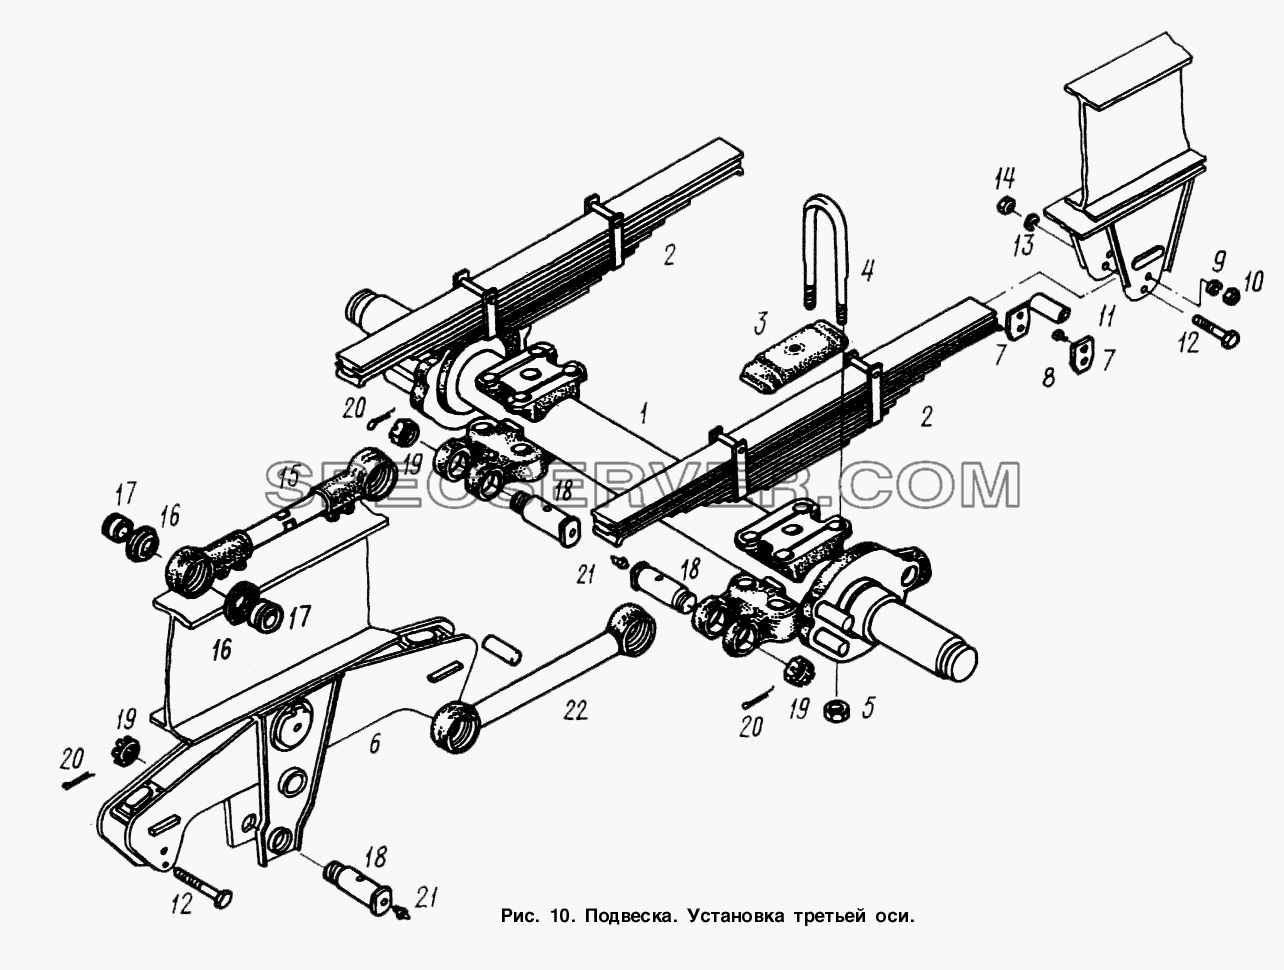 Подвеска. Установка третьей оси для МАЗ-9758-30 (список запасных частей)